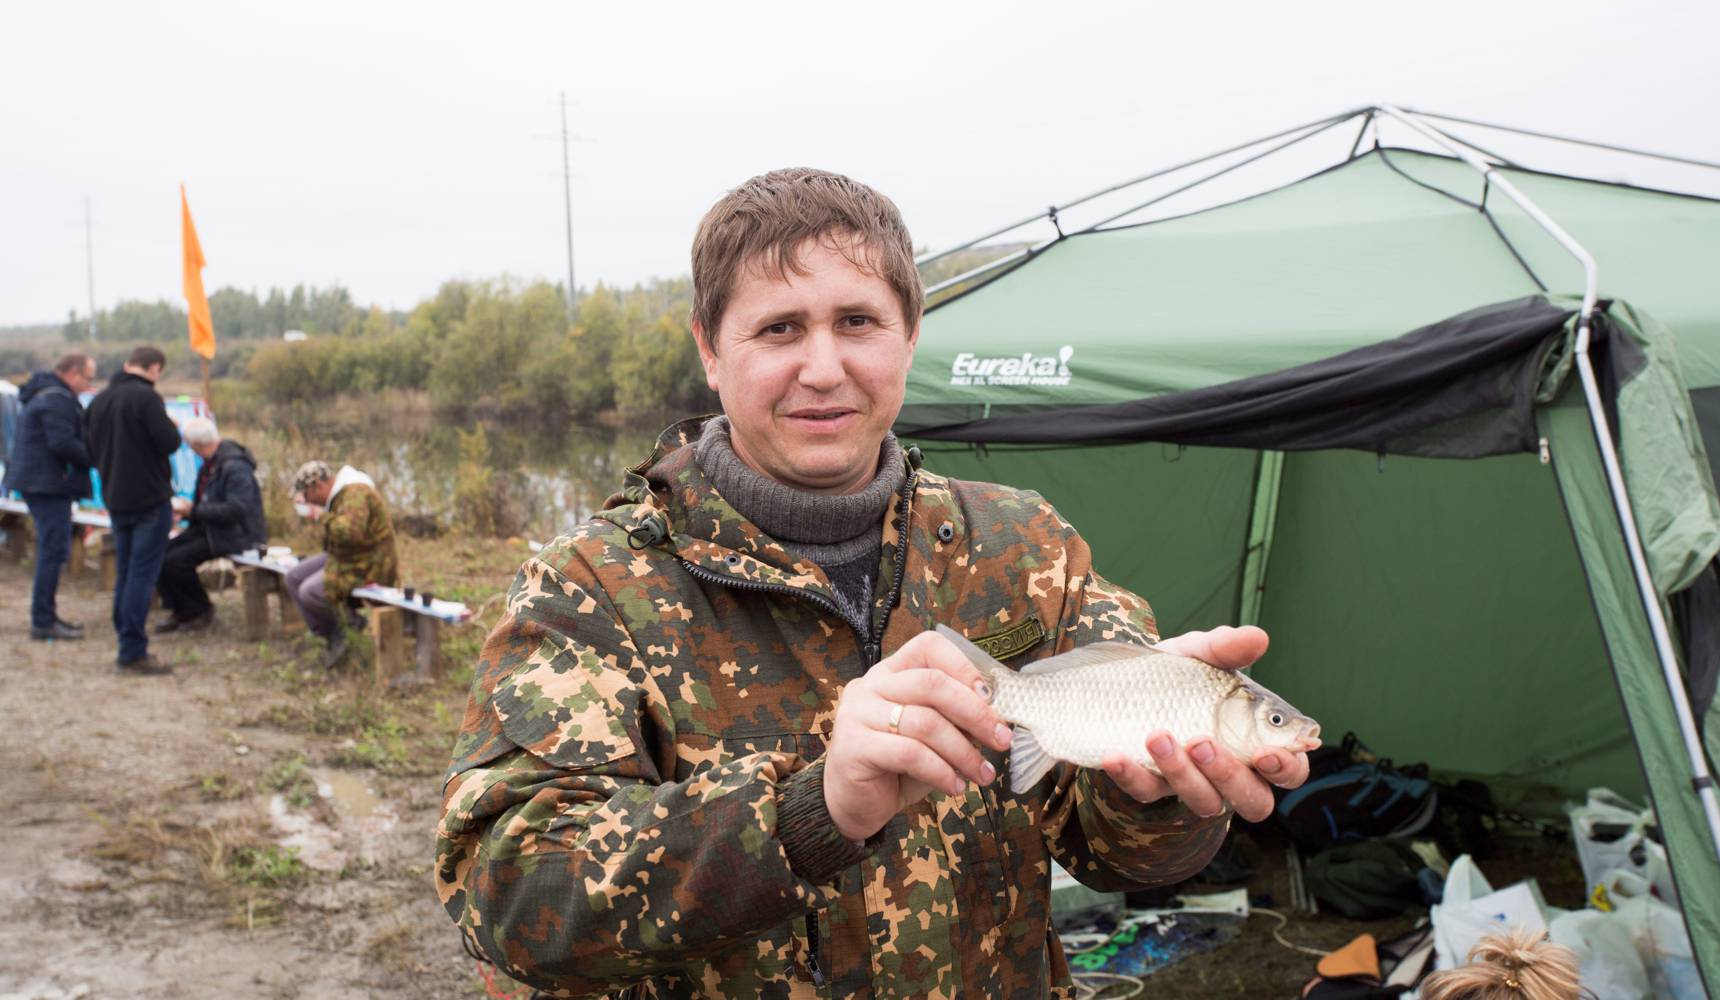 Новости рыбалки челябинской области в контакте